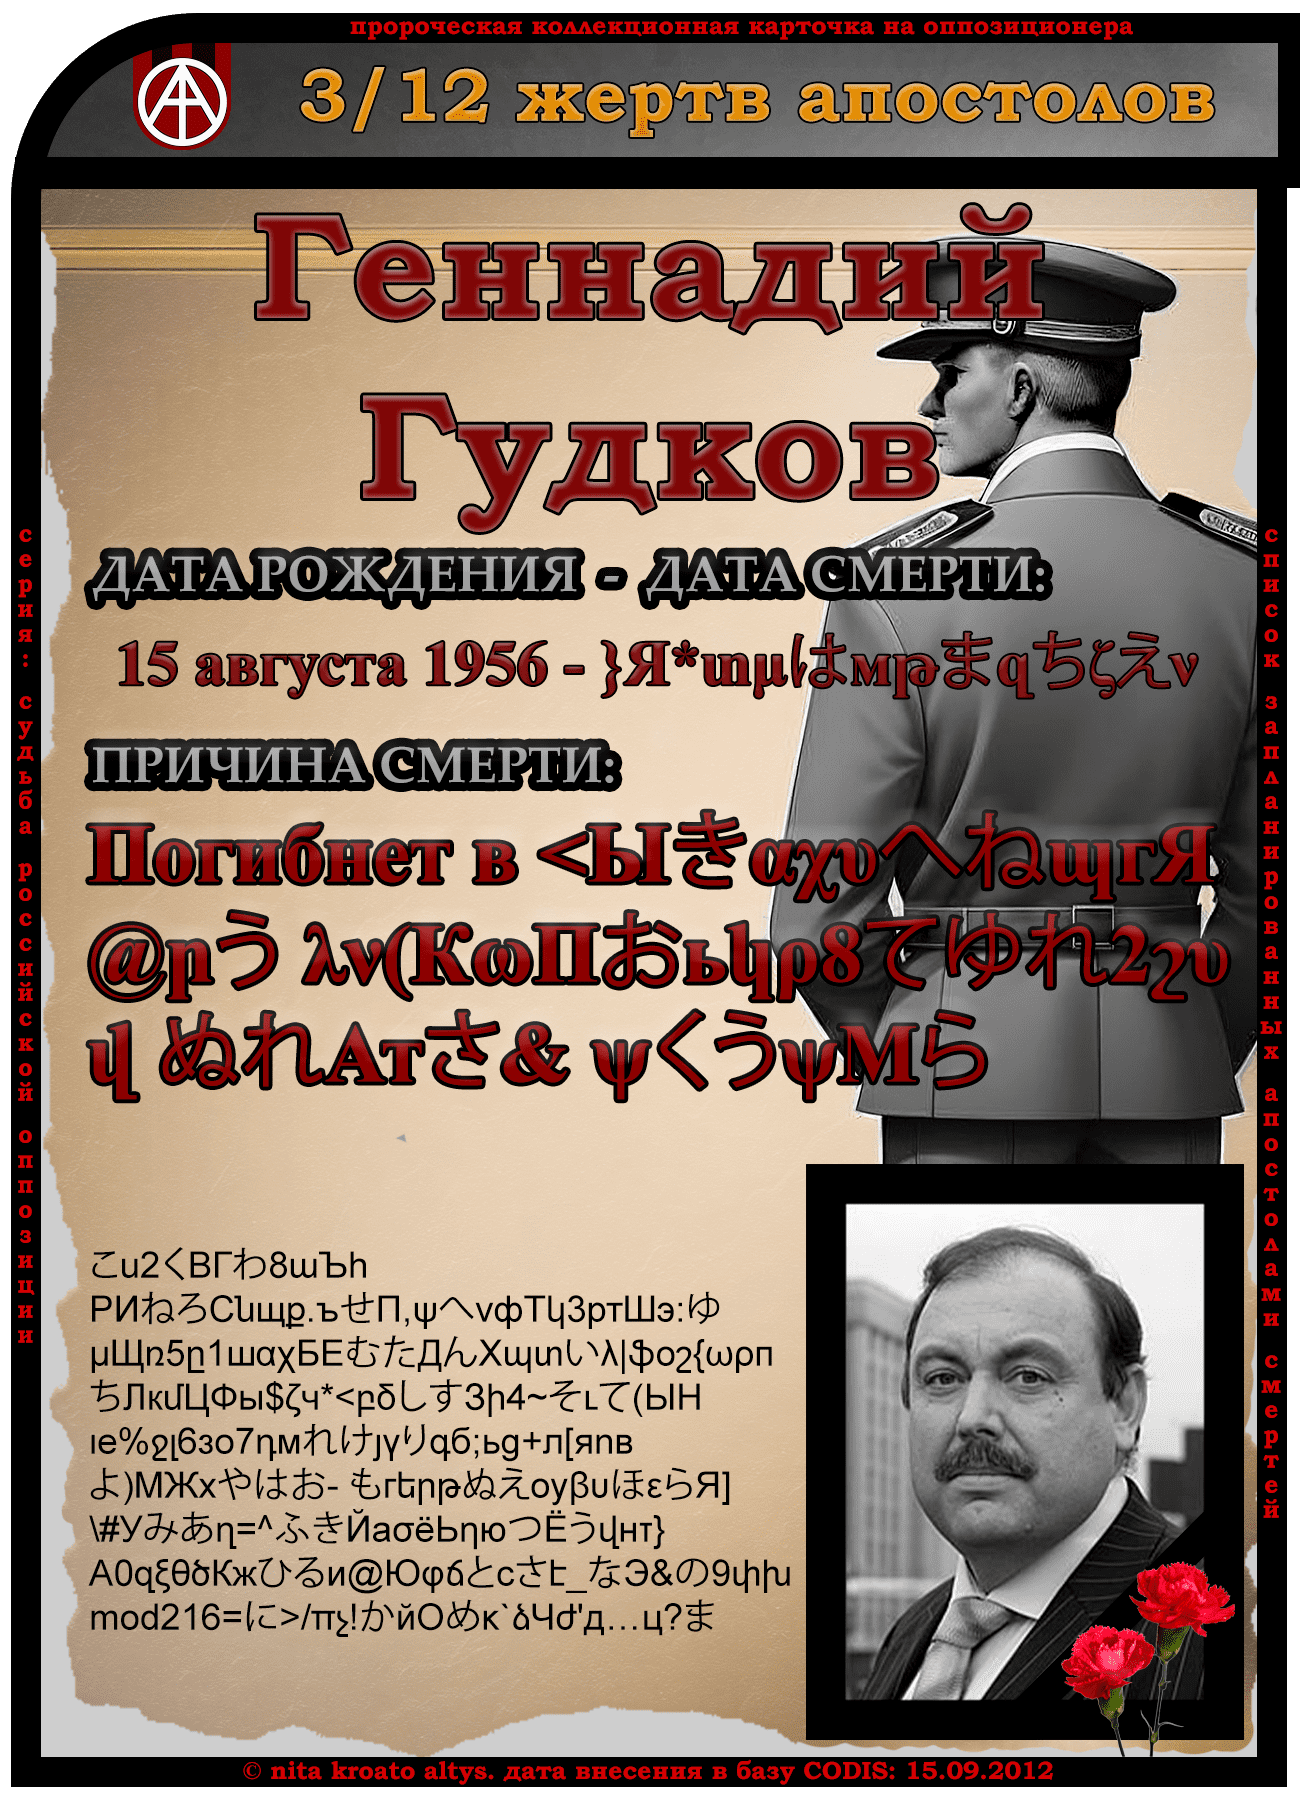 3. Геннадий Гудков 15 августа 1956. Дата смерти и причина